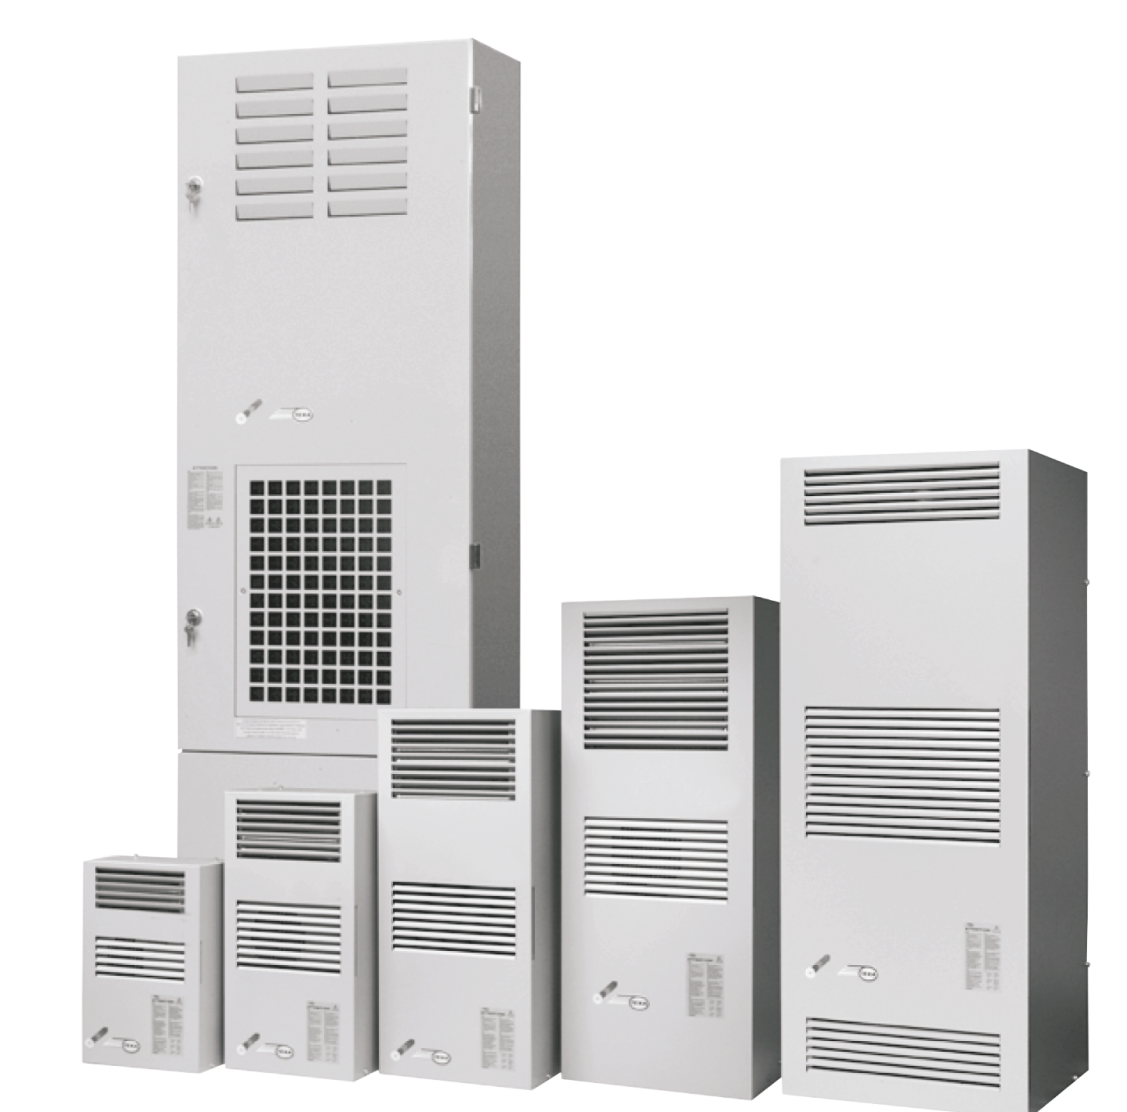 Air conditioner EGO30 (230V, 50-60Hz, 2900W)